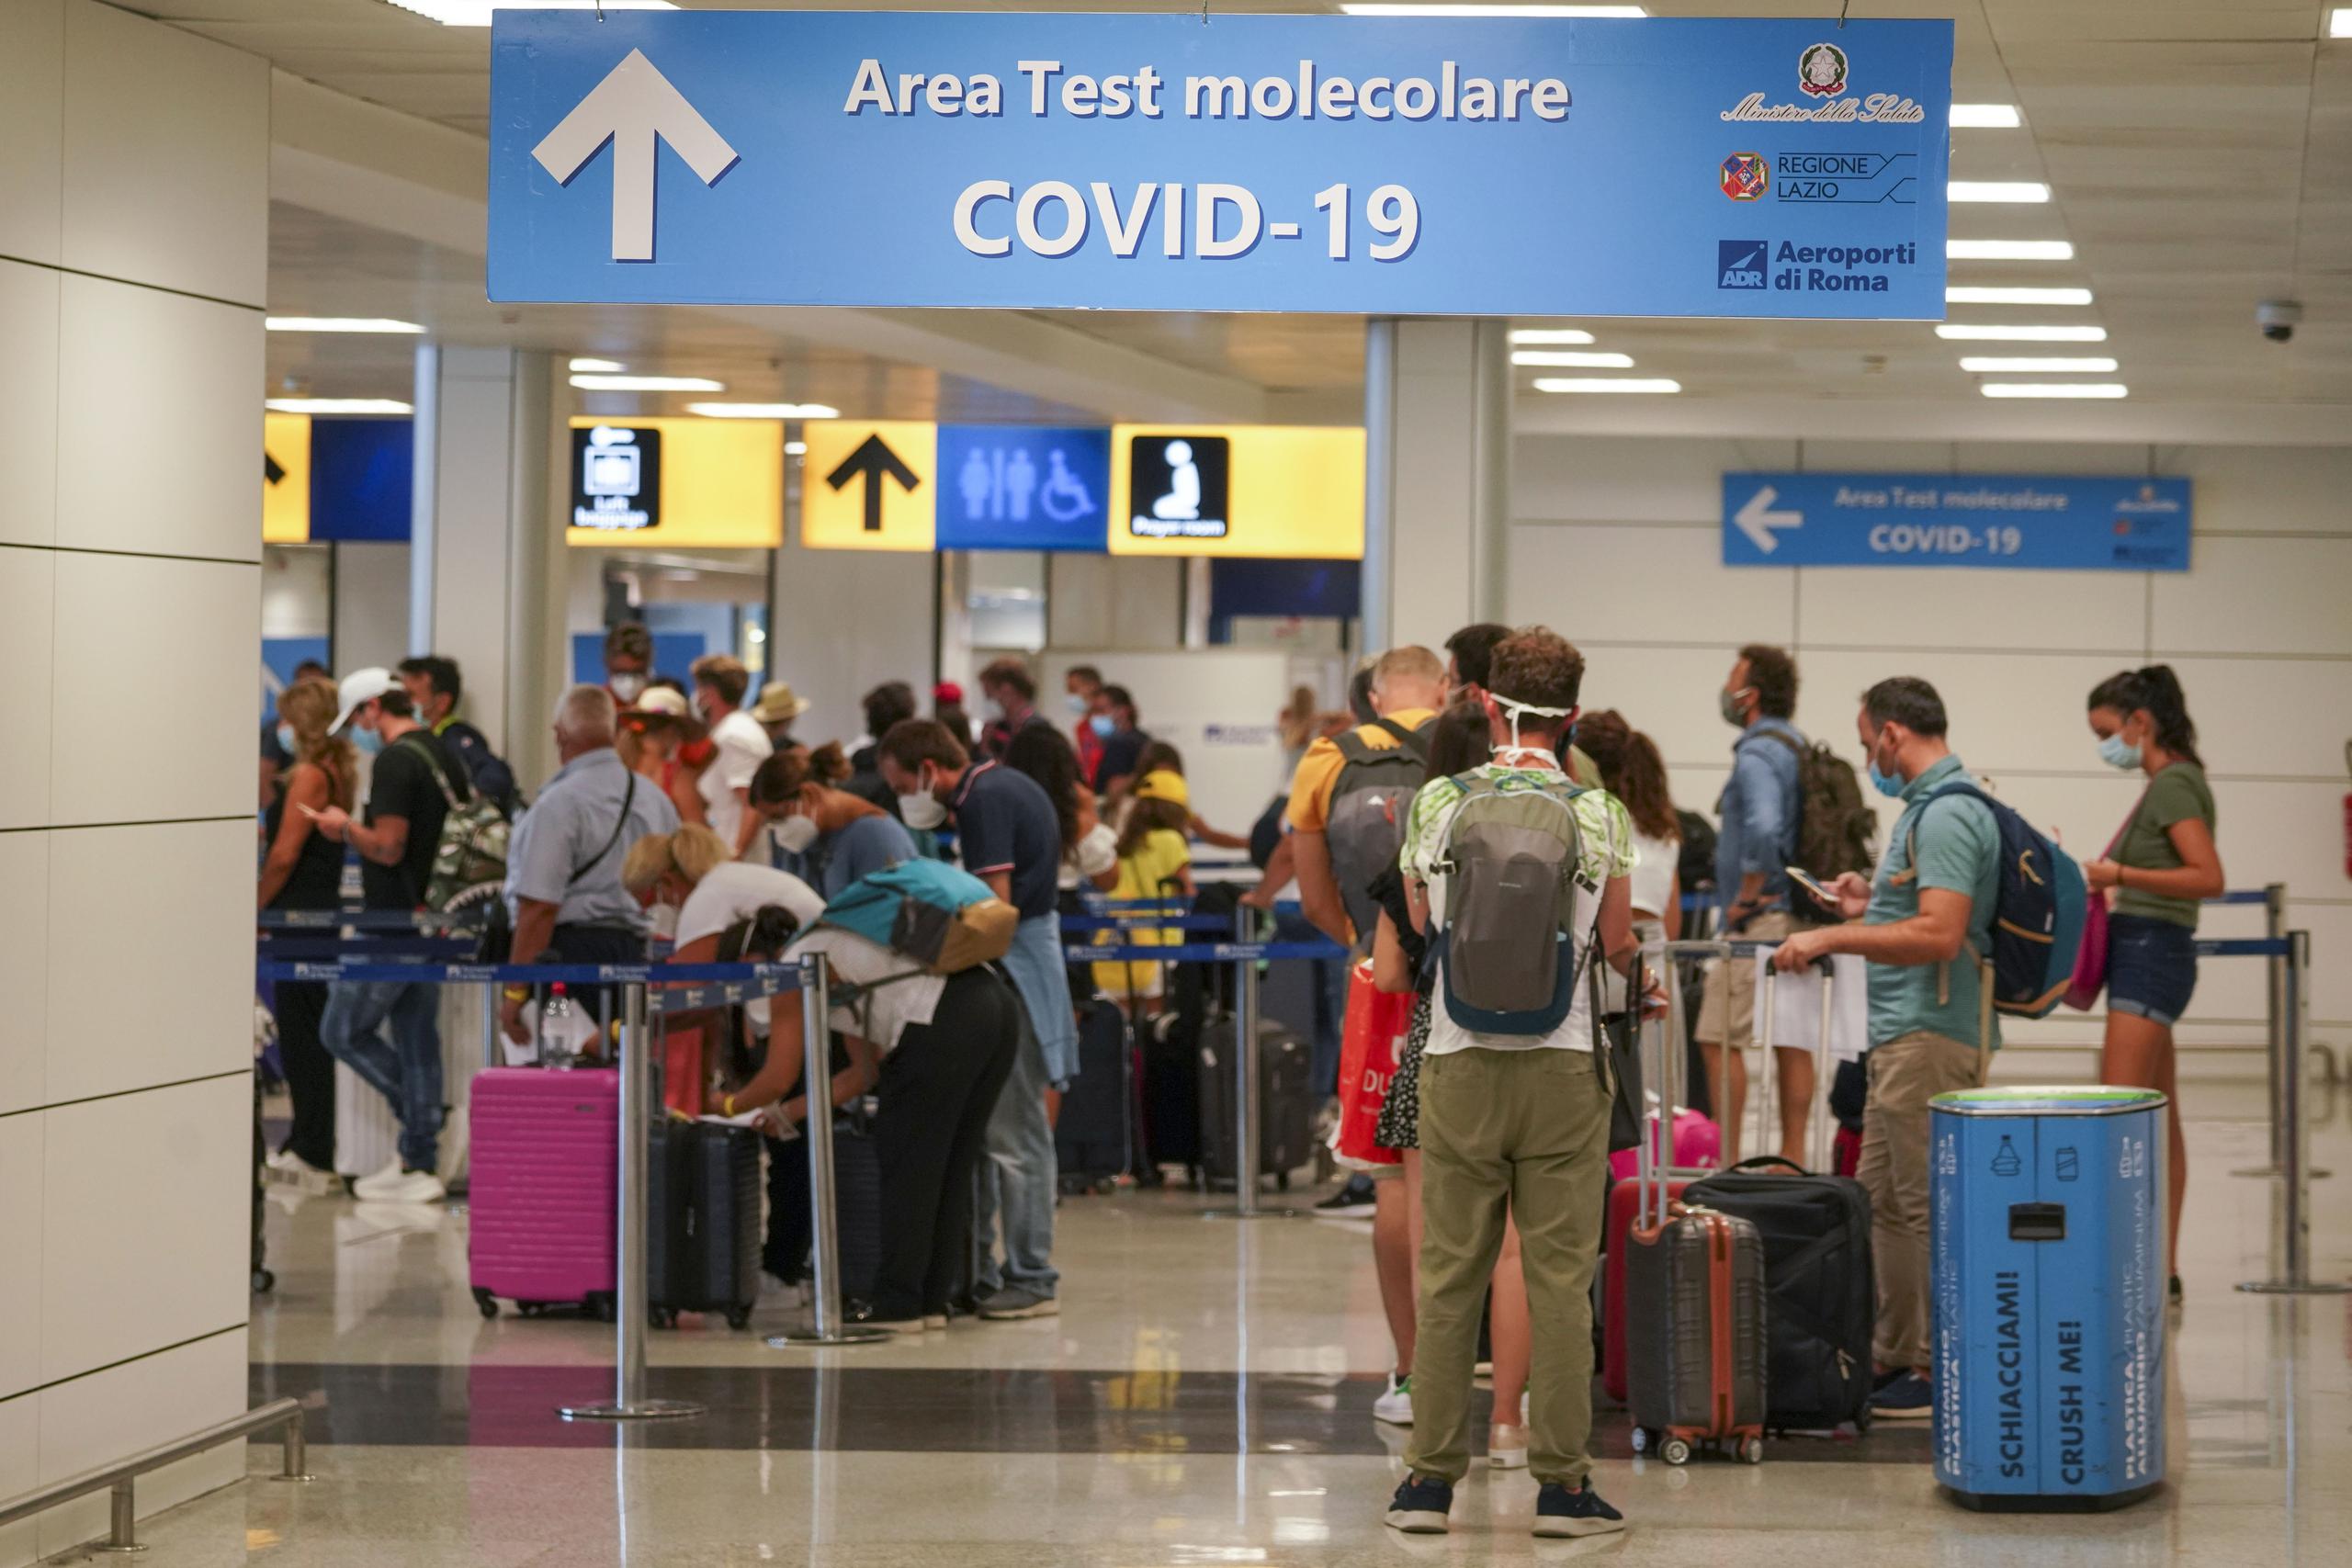 Vacacionistas llegan al Aeropuerto Leonardo da Vinci en Roma, Italia, donde son examinados de inmediato por coronavirus, el domingo 16 de agosto de 2020.